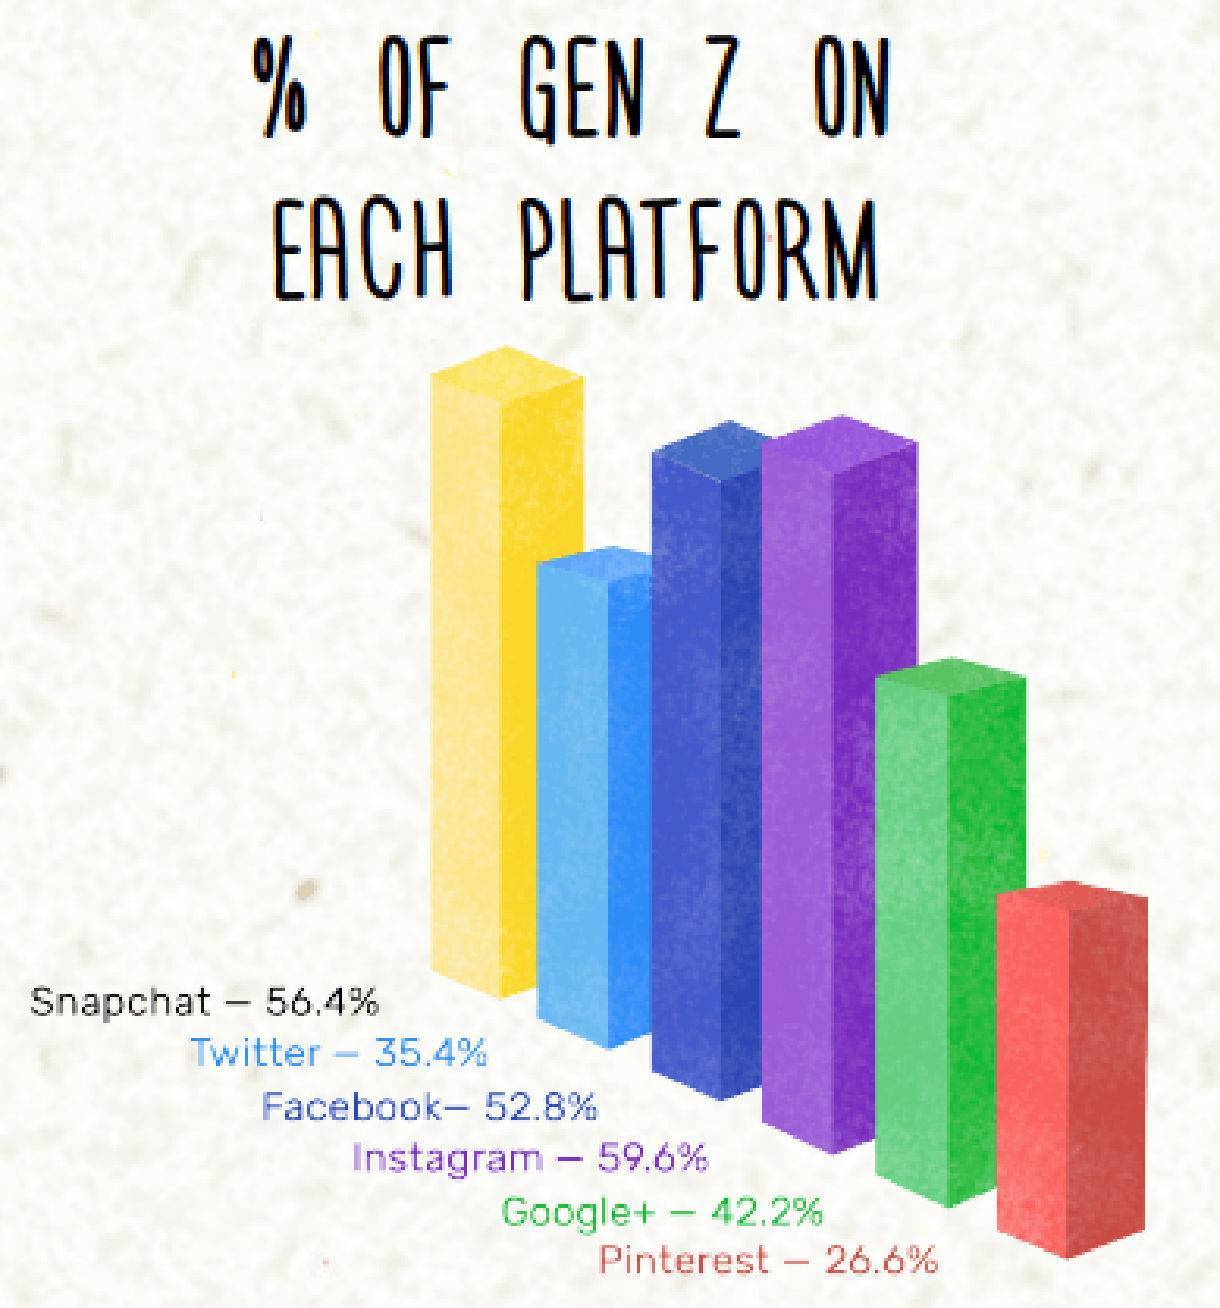 Generation Z Marketing - Social Media Usage